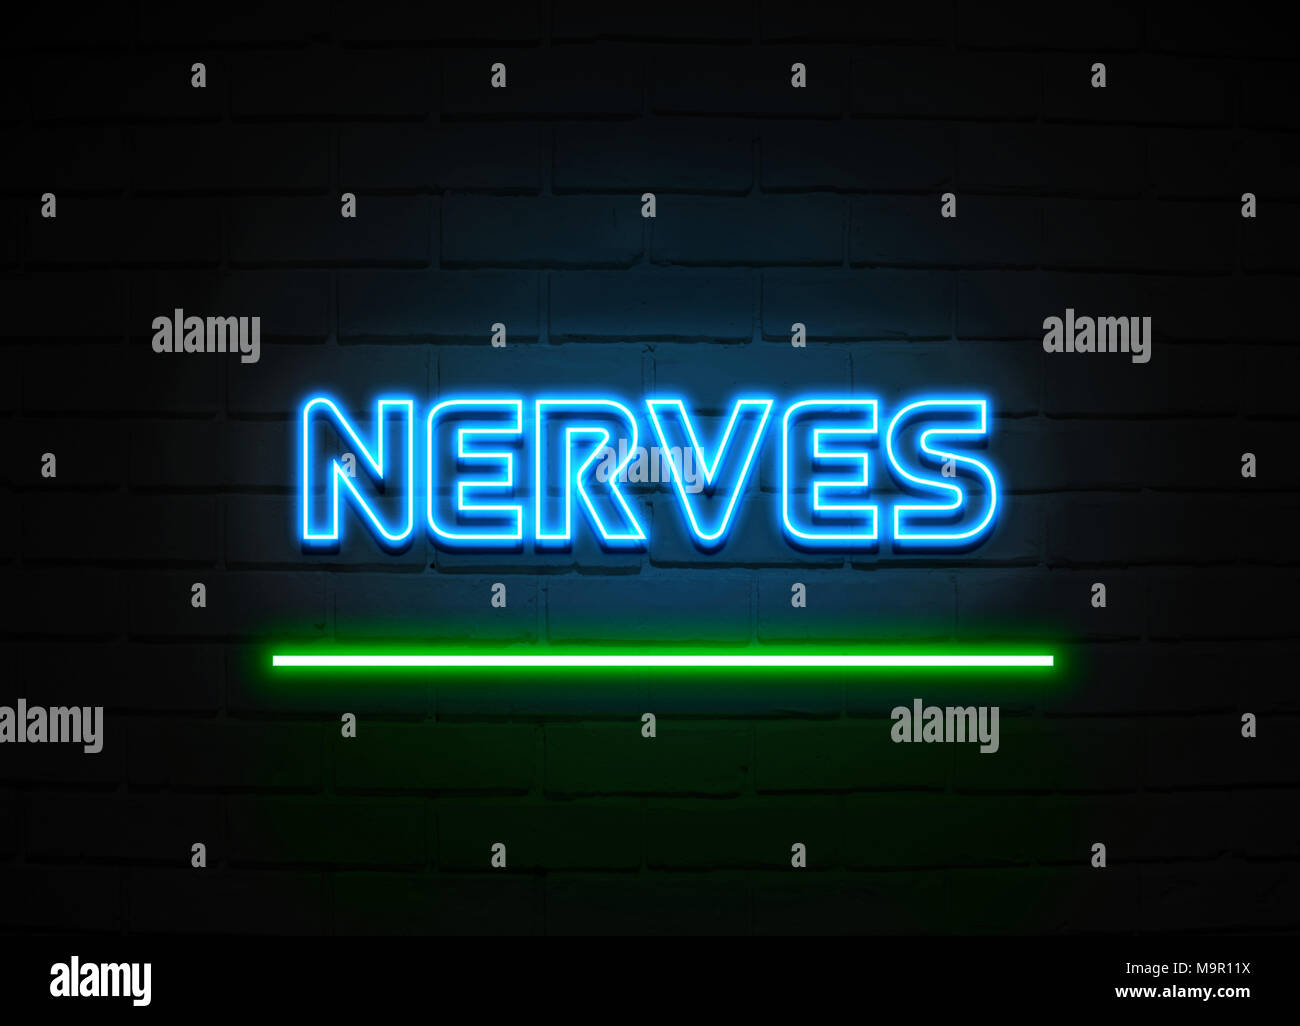 Nerven Leuchtreklame - glühende Leuchtreklame auf brickwall Wand - 3D-Royalty Free Stock Illustration dargestellt. Stockfoto